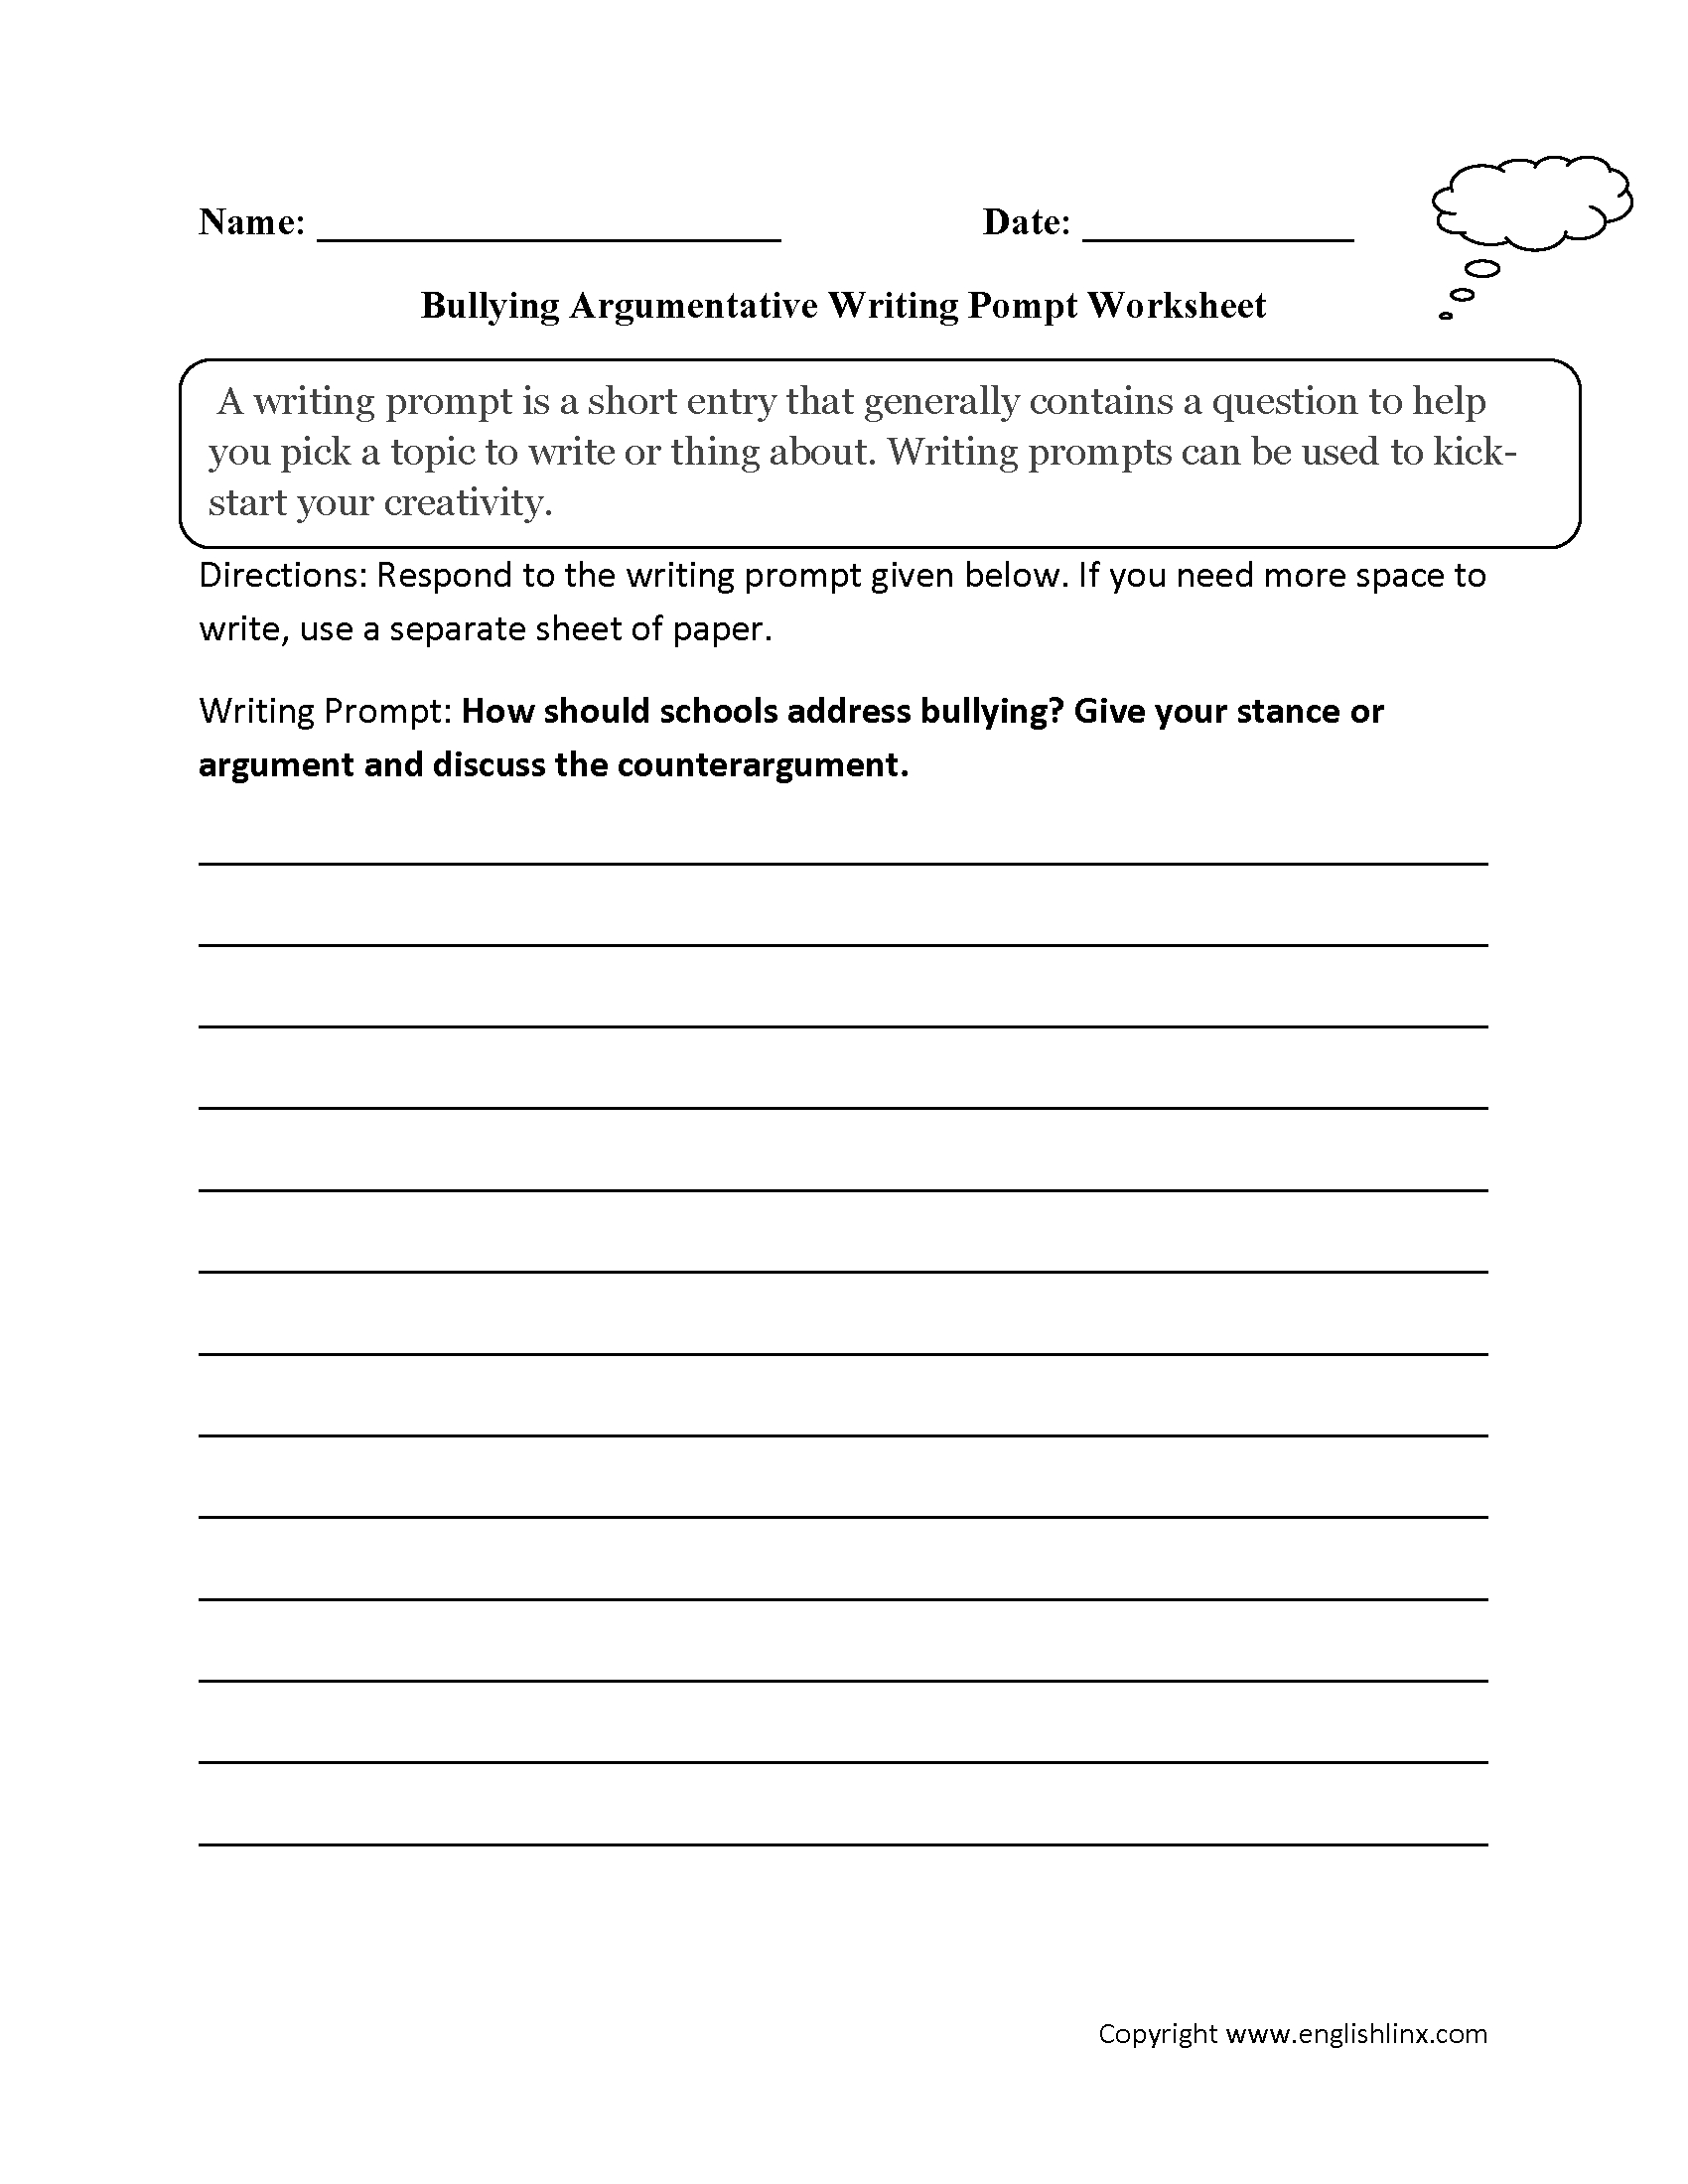 Writing Prompts Worksheets  Argumentative Writing Prompt Worksheets For Bullying Worksheets Pdf